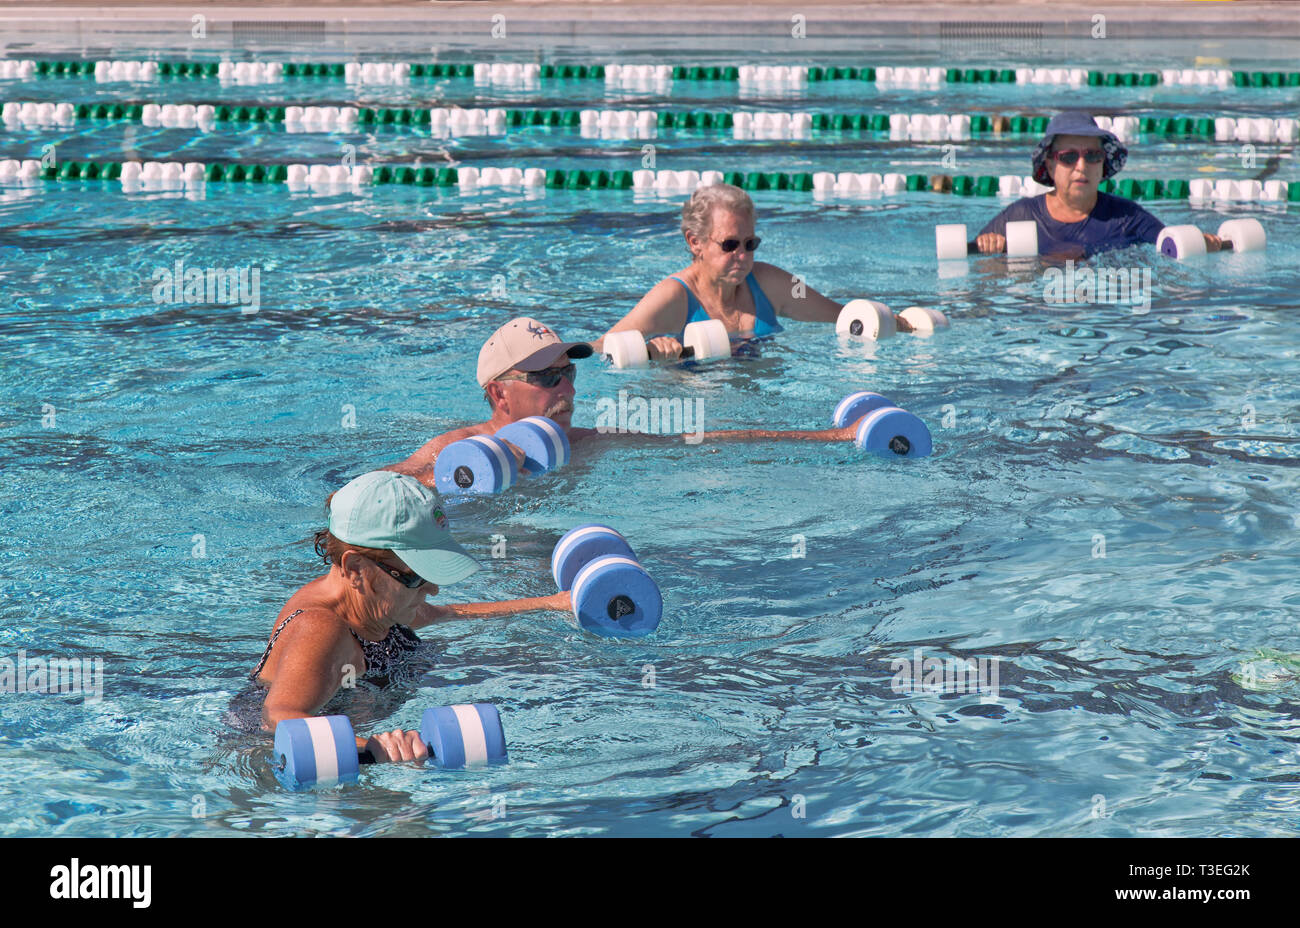 Ältere Frauen & Mann die Teilnahme an der Wassergymnastik Klasse, mit 'Wasser' Hanteln, Outdoor öffentliches beheiztes Schwimmbad. Stockfoto